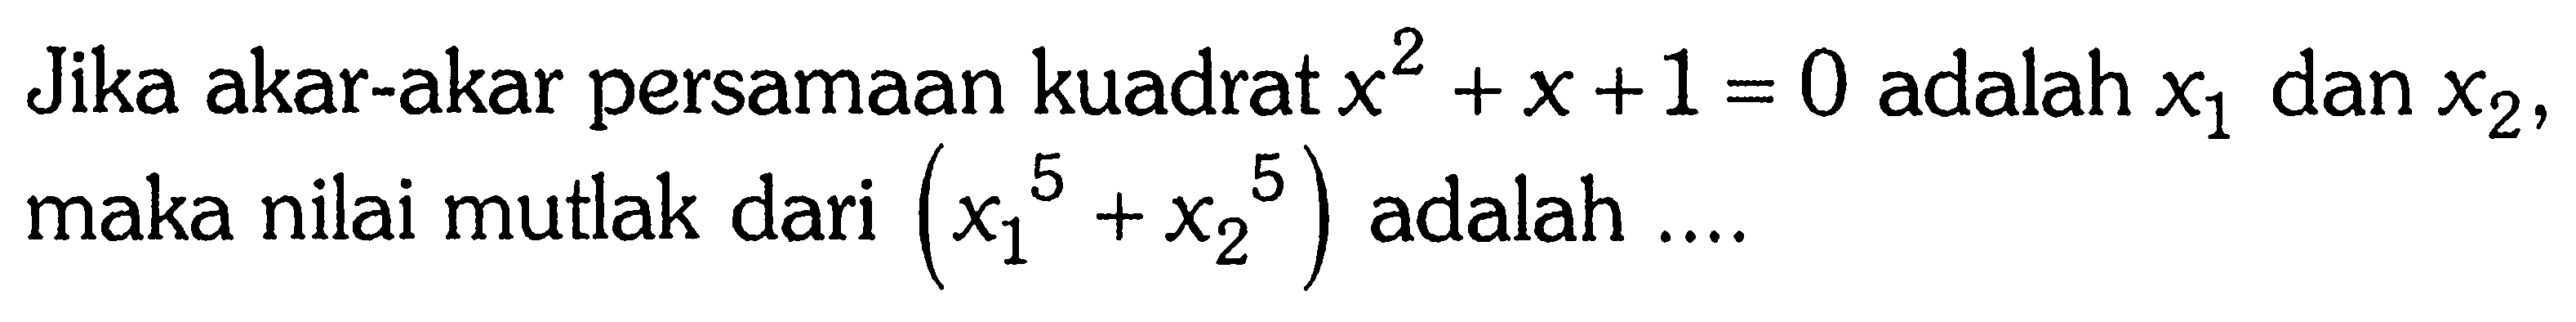 Jika akar-akar persamaan kuadrat x^2+x+1=0 adalah x1 dan x2, maka nilai mutlak dari (x1^5+x2^5) adalah ....